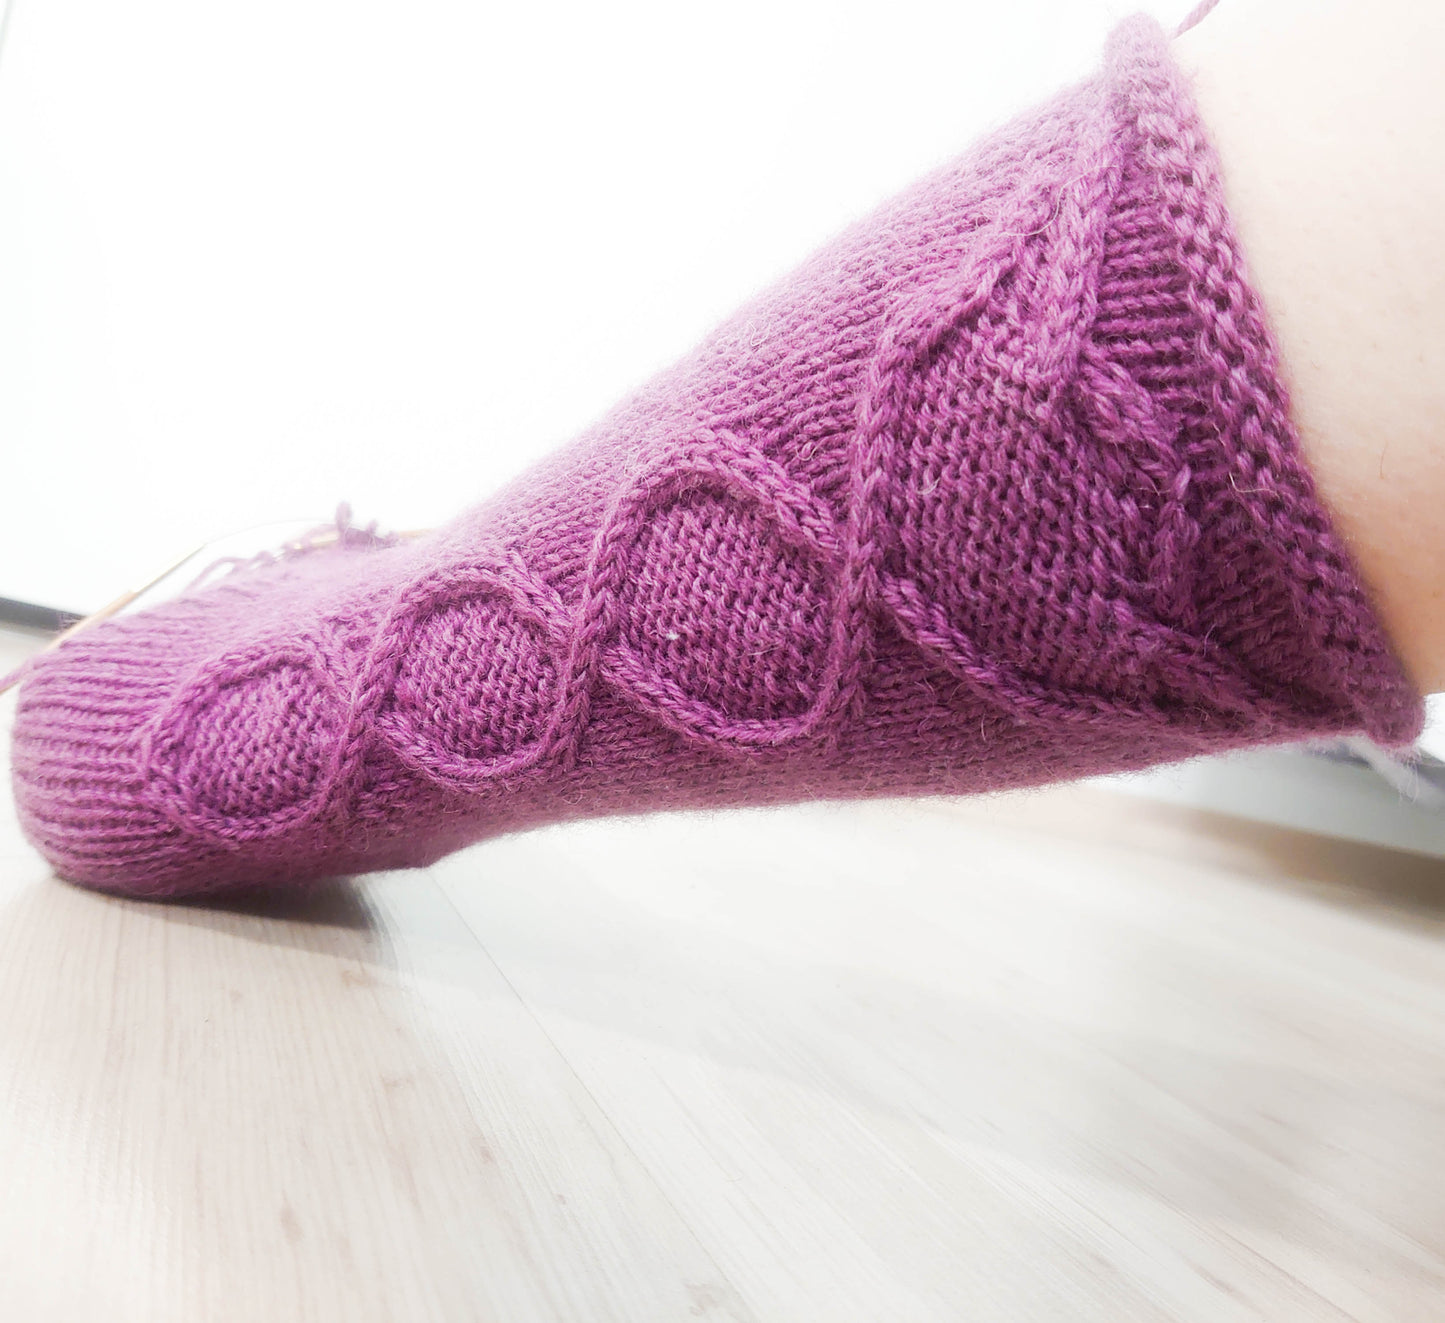 Bluebell - Socks Knitting Pattern